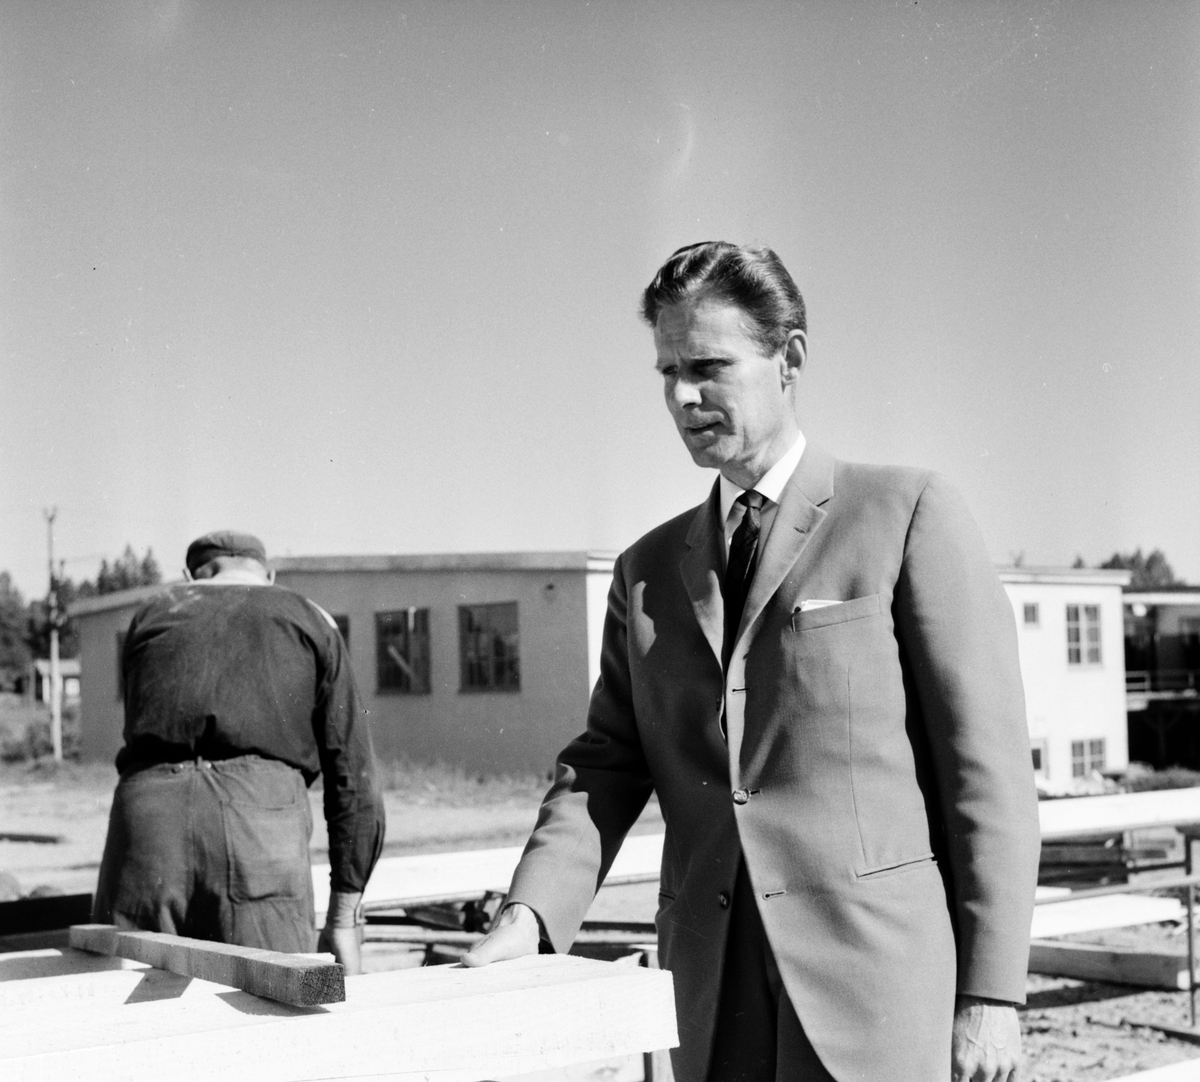 Lingbo Finnès. Fönstertillverkare
Lilian Pettersson, Carl-Erik Carlsson
8/6-1963